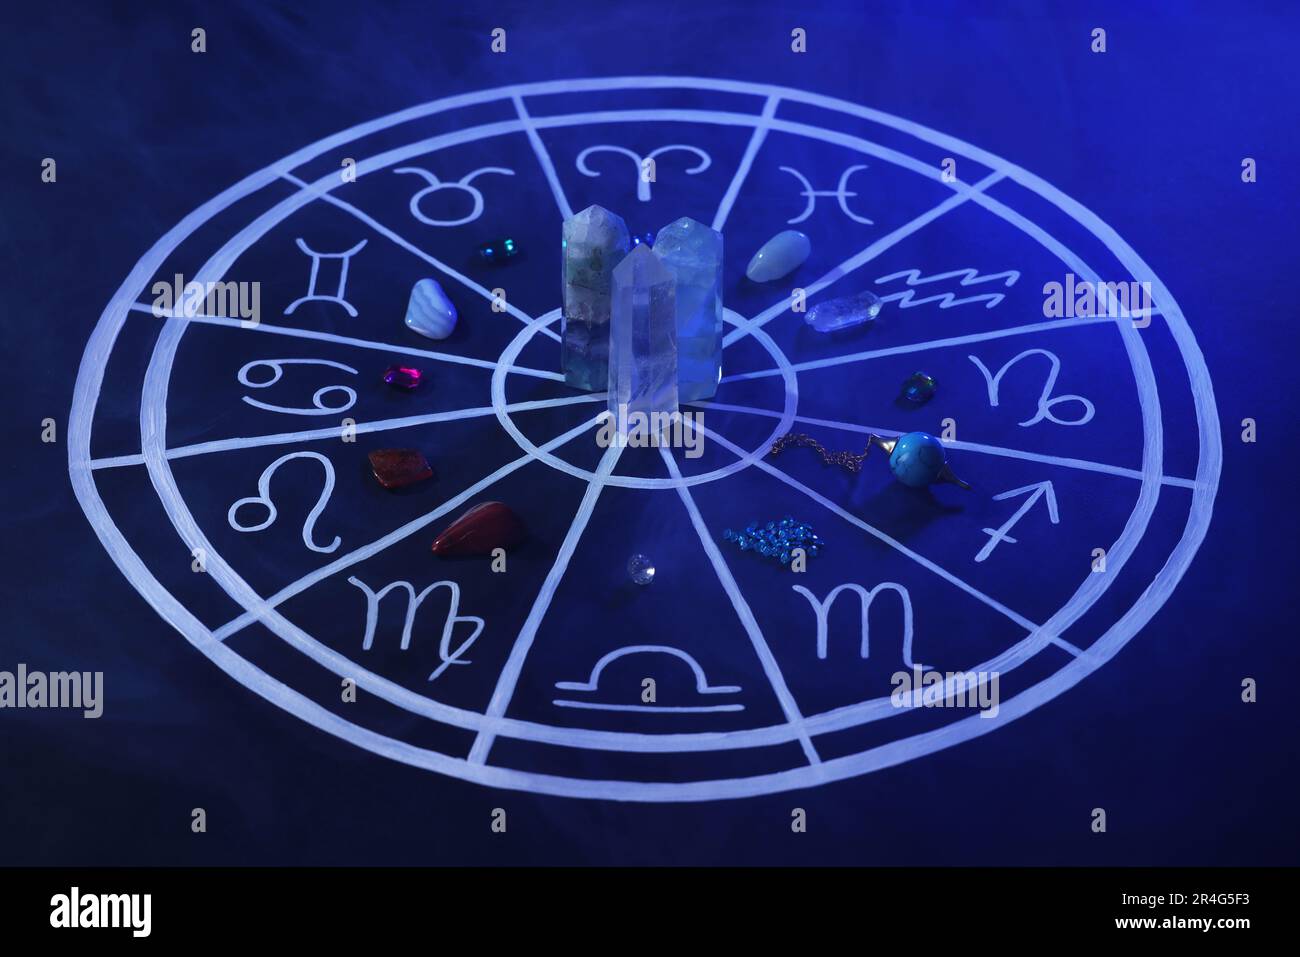 Pierres naturelles pour les signes du zodiaque et carte d'astrologie dessinée sur fond bleu foncé Banque D'Images